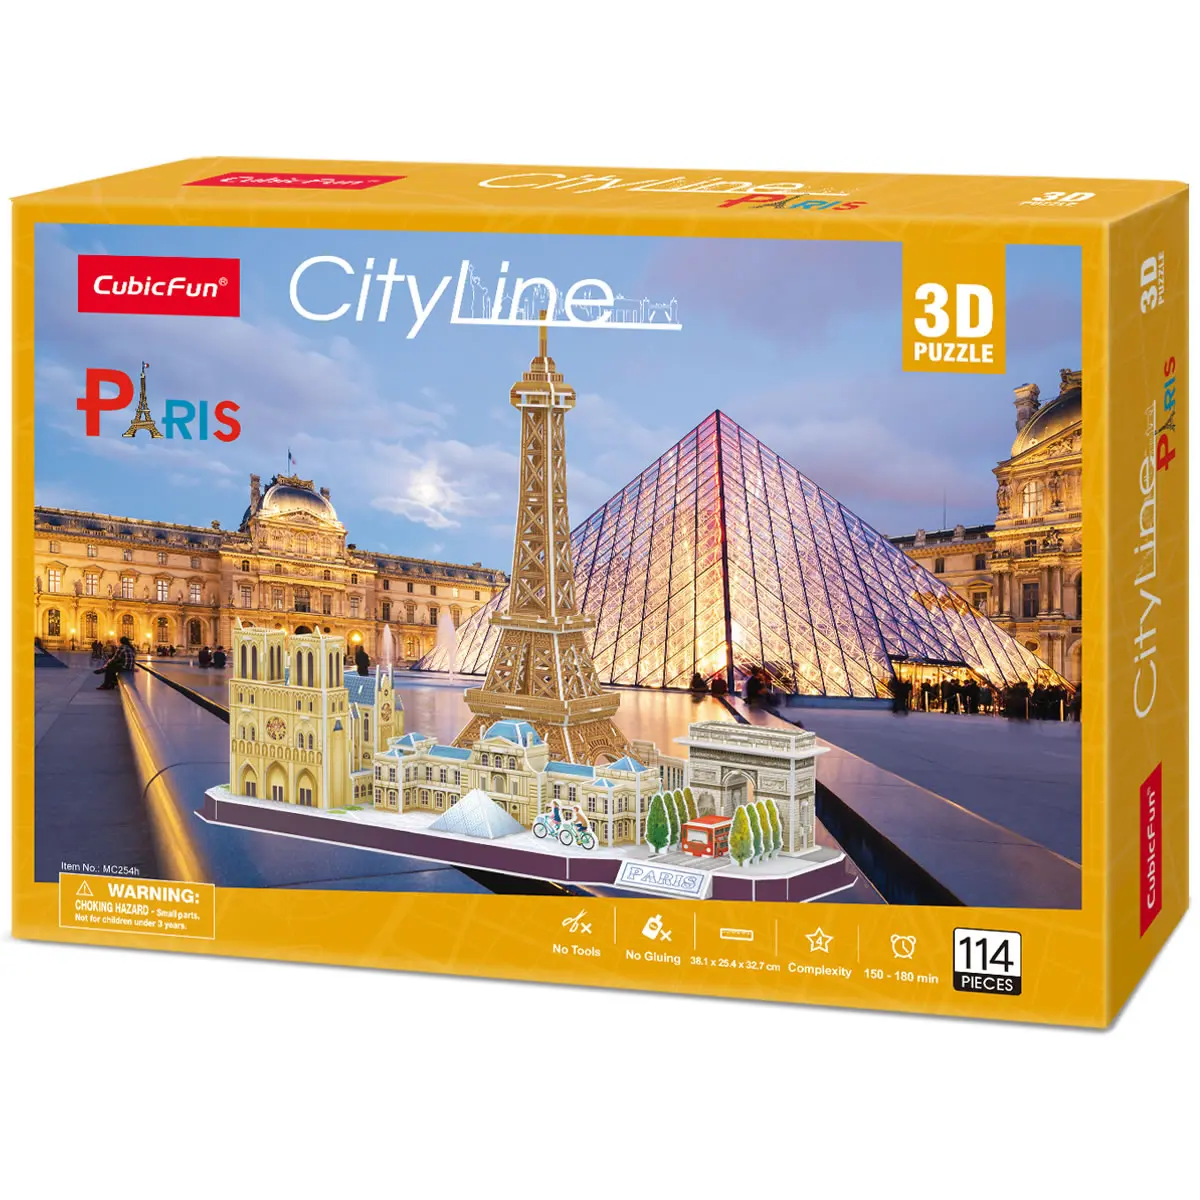 Cubic Fun 3D Puzzle Stadtansicht City Line Paris Frankreich 